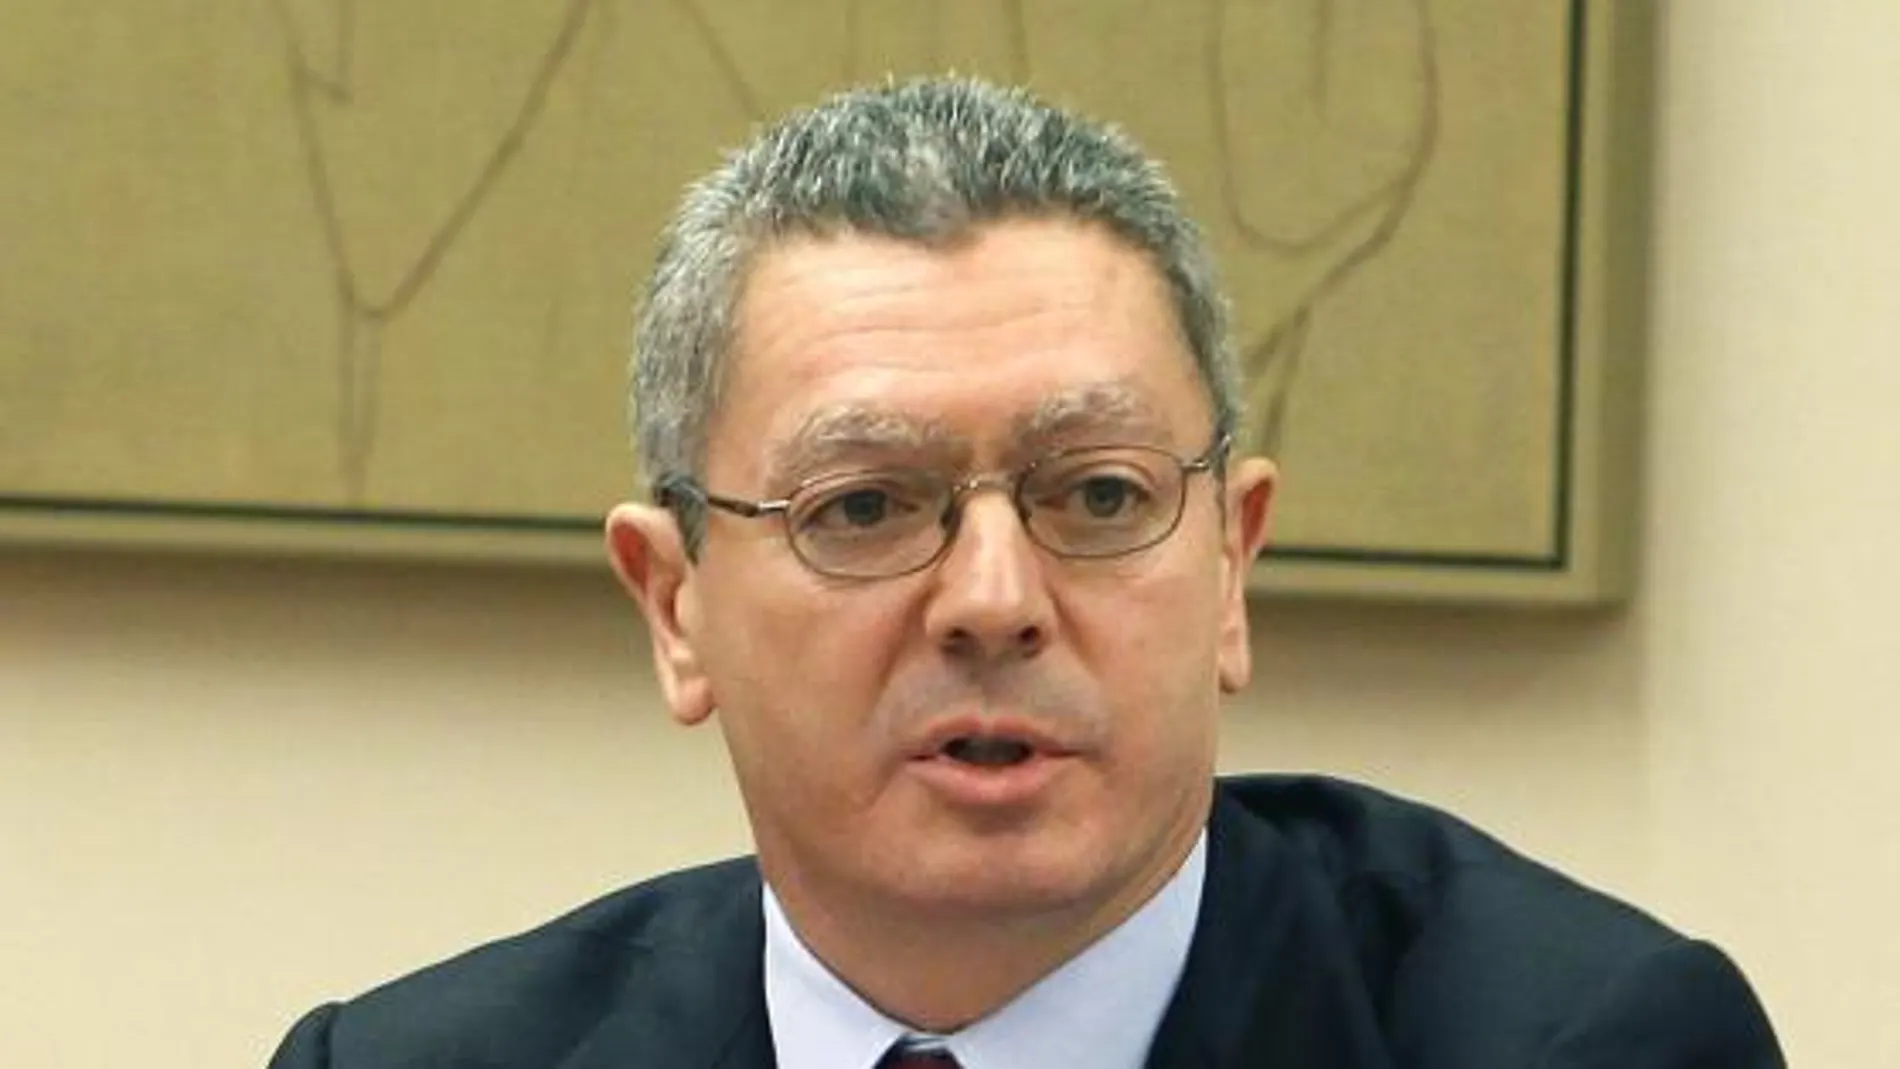 Gallardón espera sumar a las reformas al mayor número de grupos parlamentarios